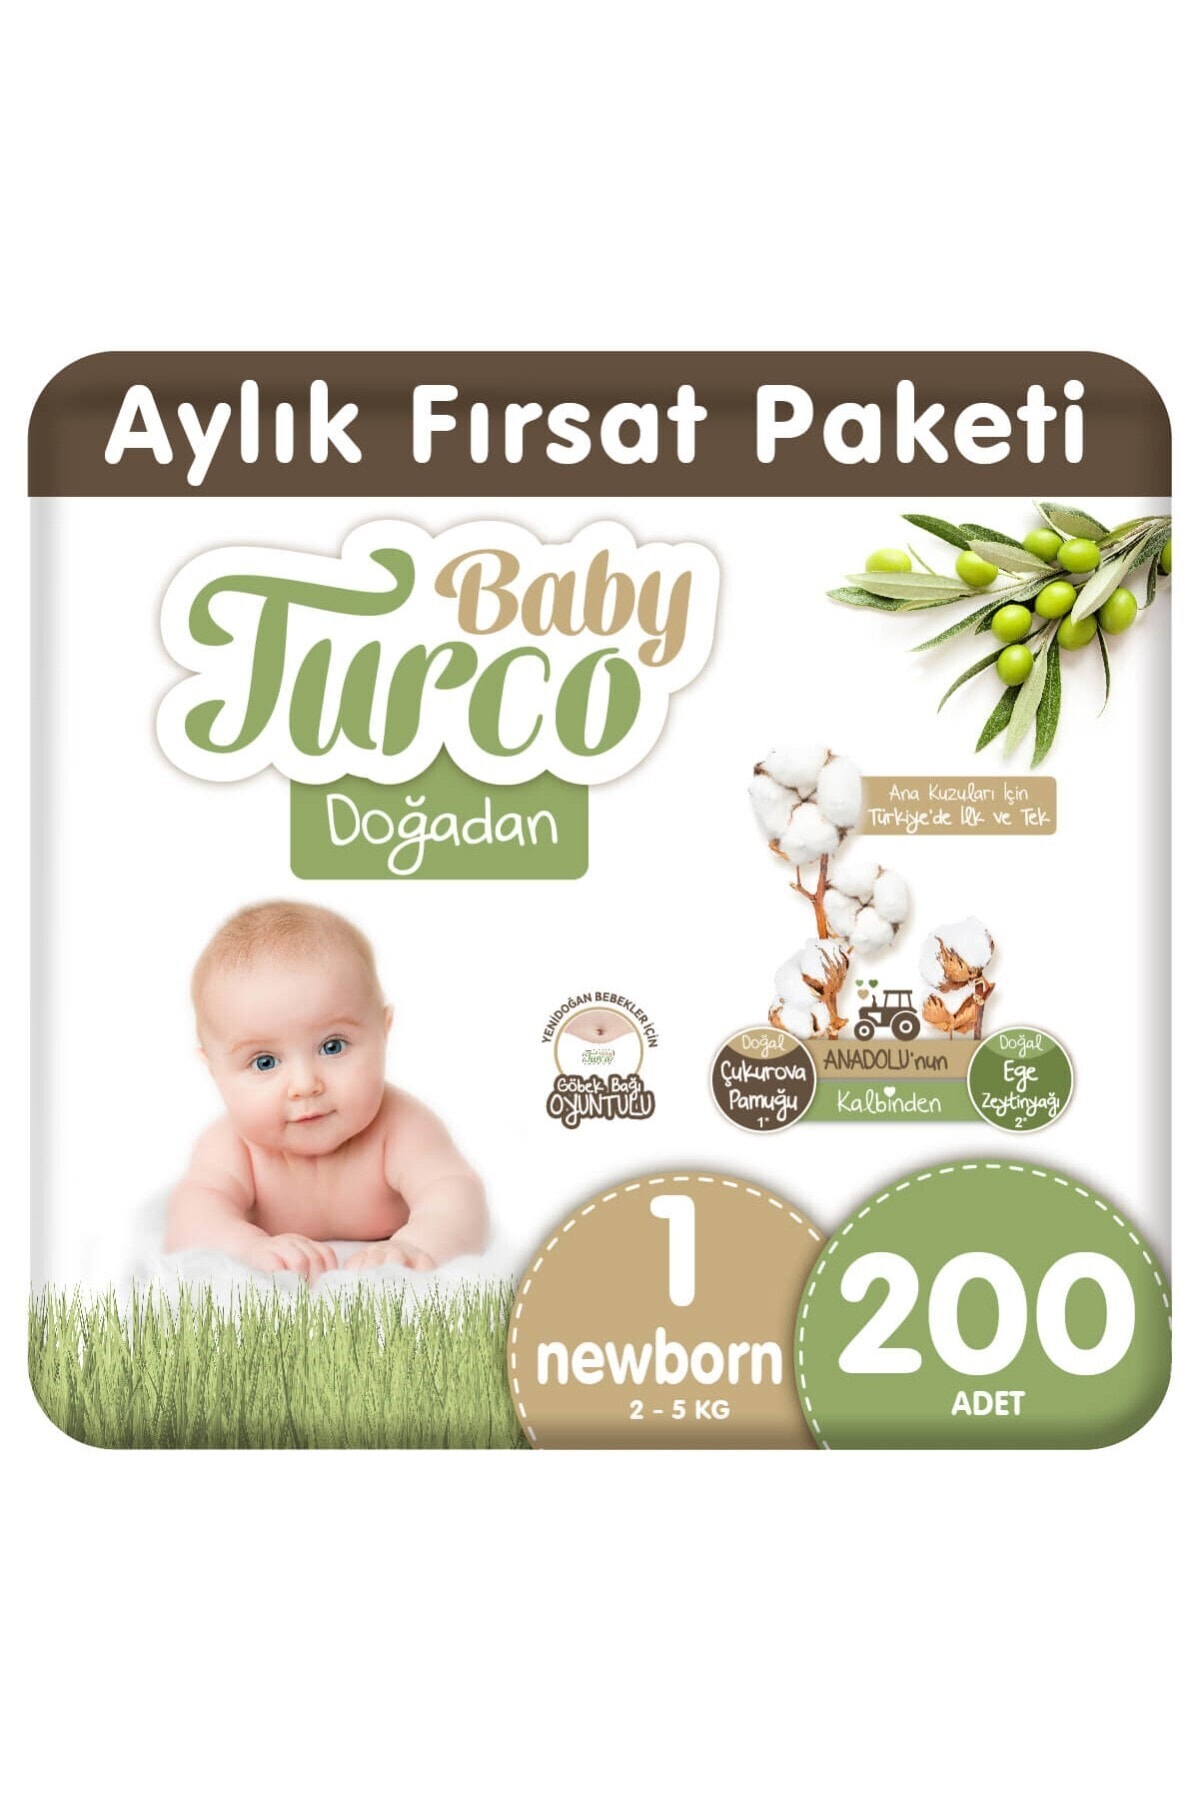 Baby Turco Doğadan 1 Numara Newborn 200 Adet